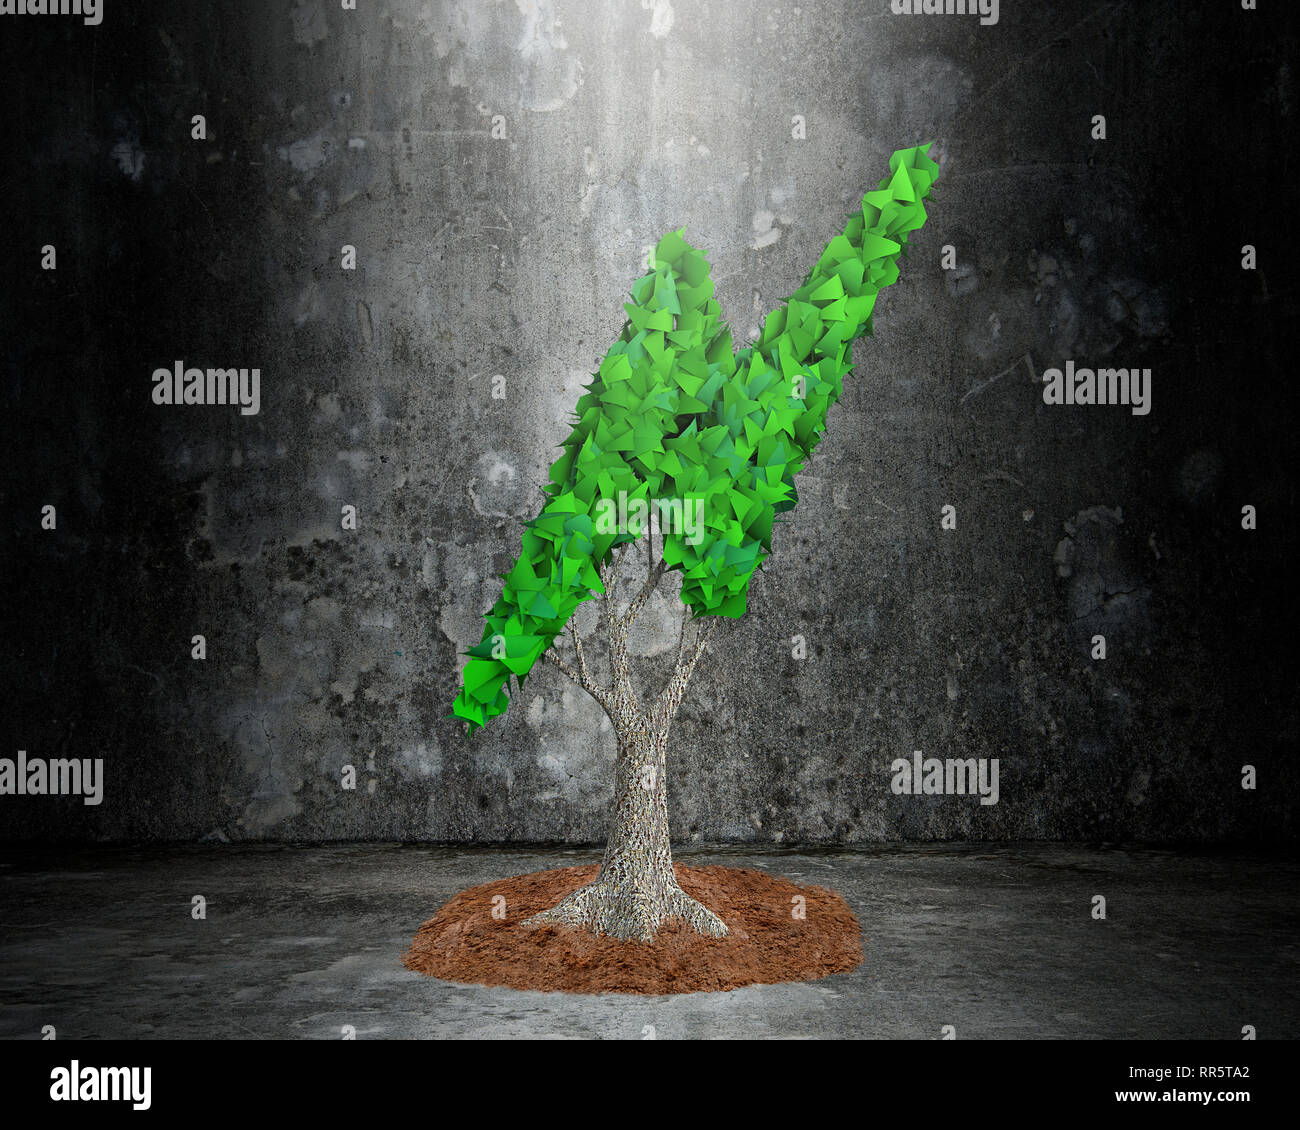 Concepto de suministro o el desarrollo de la generación de energía verde, un árbol con hojas verdes en forma de rayo y barro, sobre oscuro sucio muro de hormigón volver Foto de stock